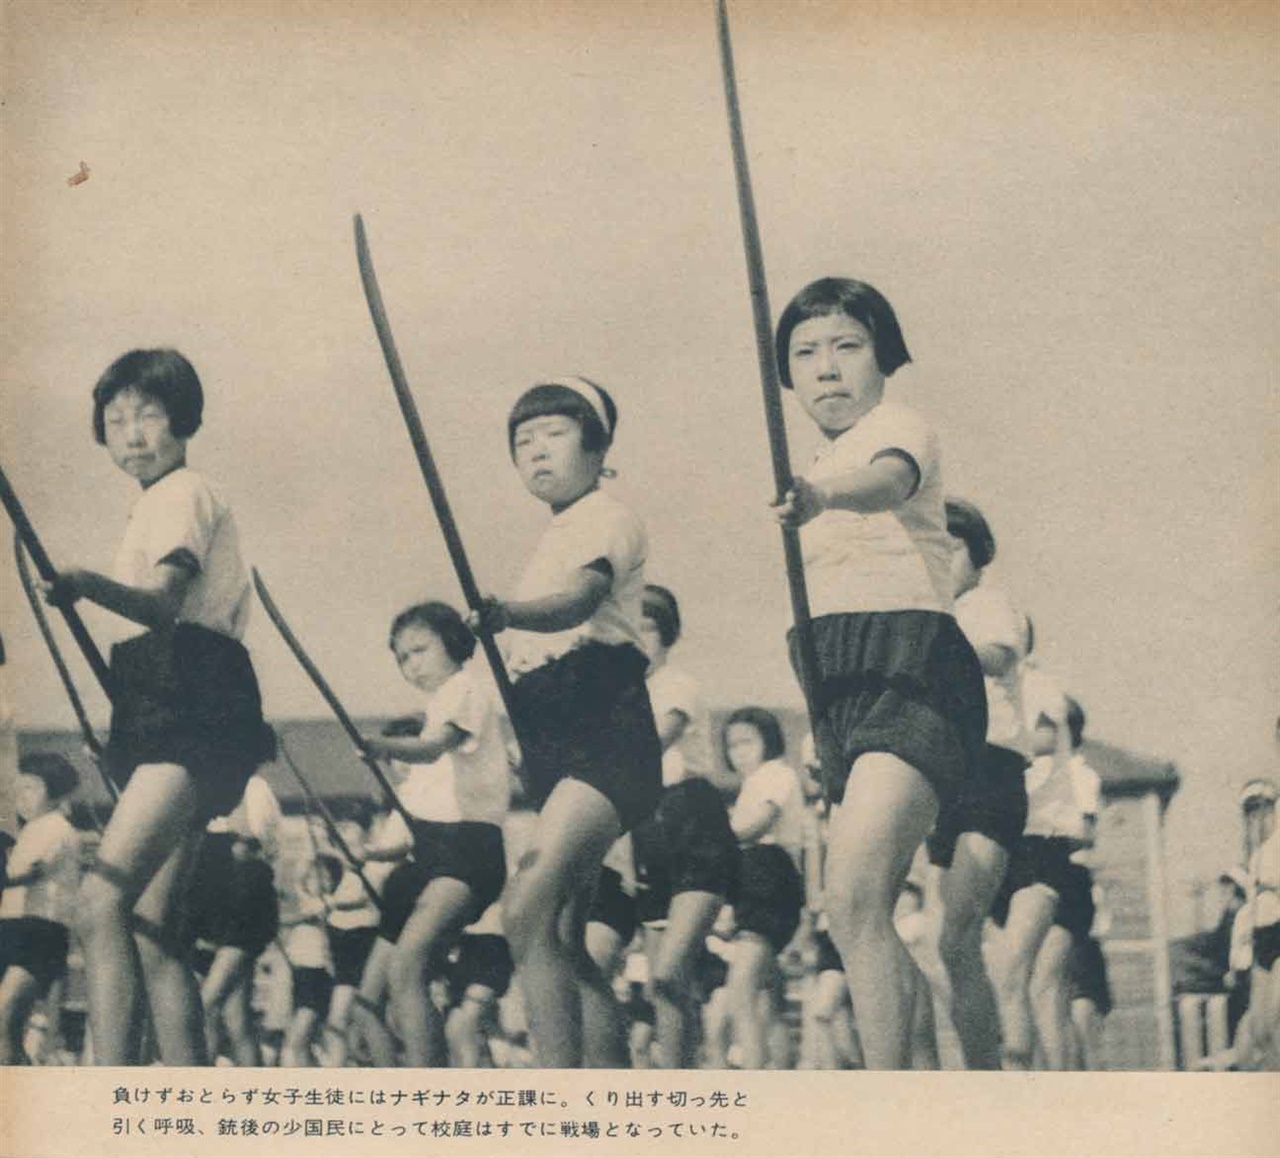 전쟁 말기 연합군에 의한 일본 본토진공이 예상되는 가운데, 항복을 거부하고 있던 제국 일본의 전쟁지도부는 '일억옥쇄'를 구호로 내걸고서 어린이들과 여성들에게까지 죽창 훈련을 실시했다.